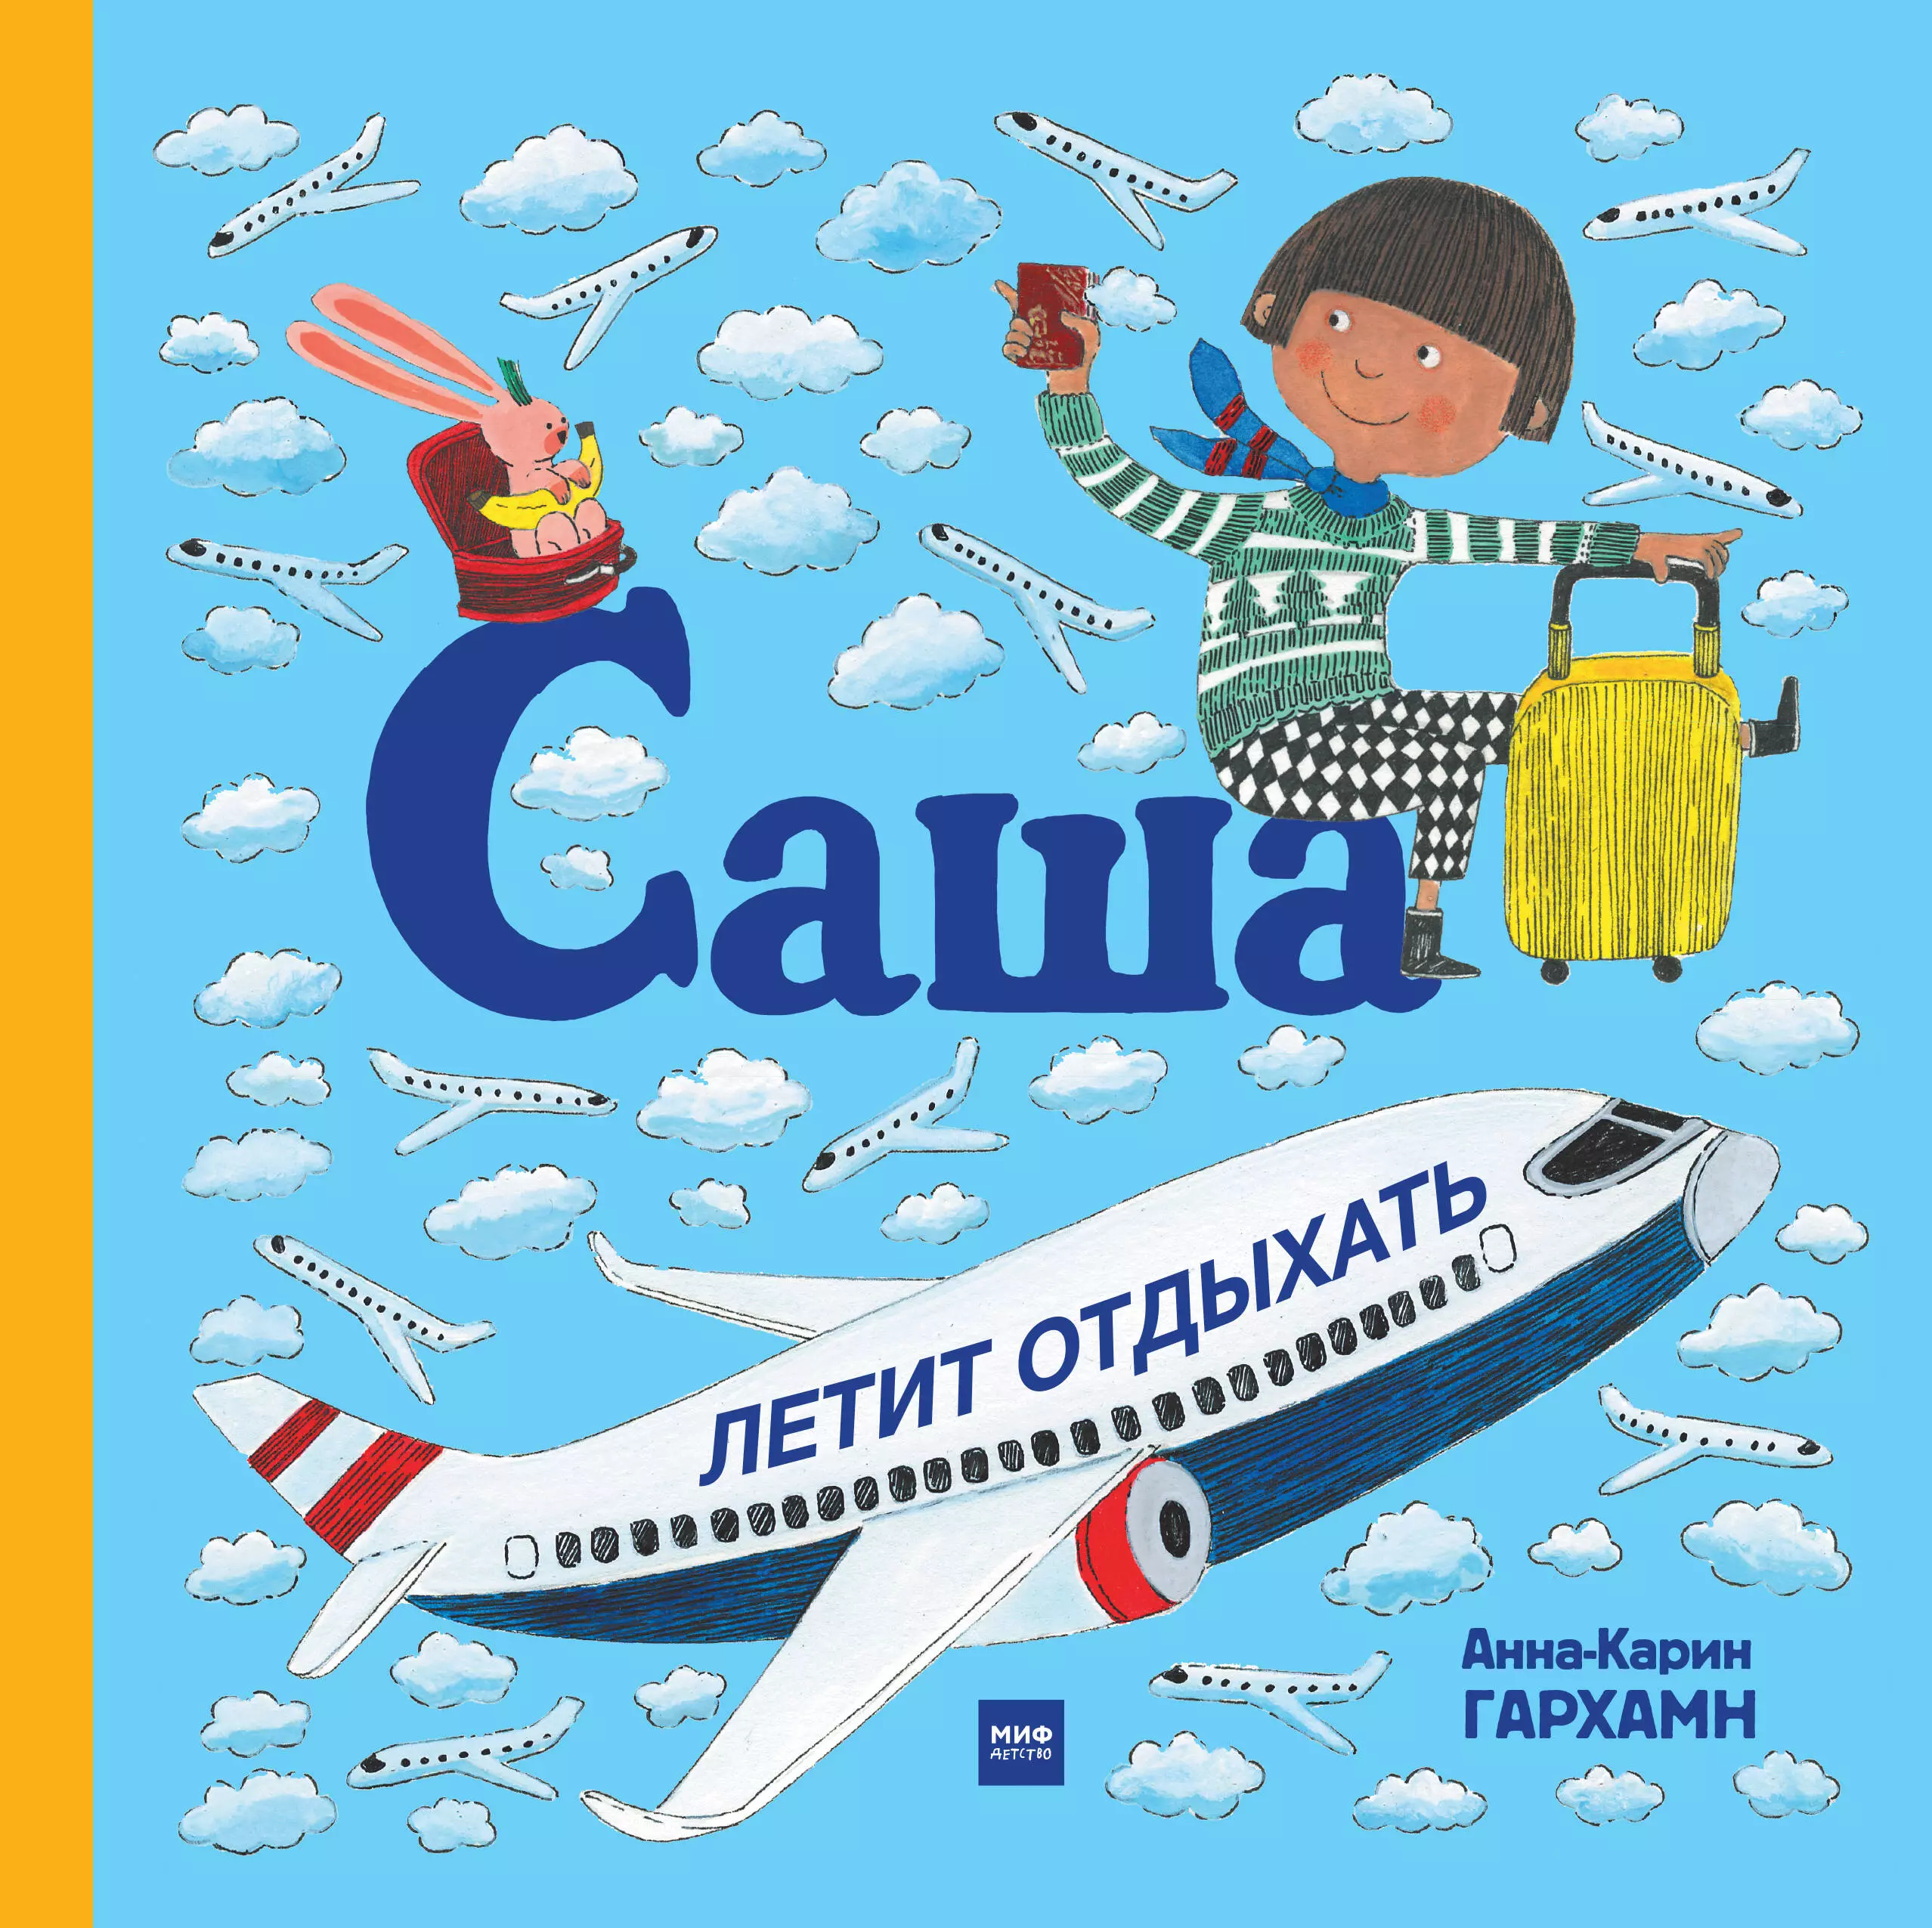 Читать книги саши токсика. Саша летит отдыхать книга. Полет в самолете детская книжка иллюстрации. Книга про полет в самолете для детей. Отдых с книгой.